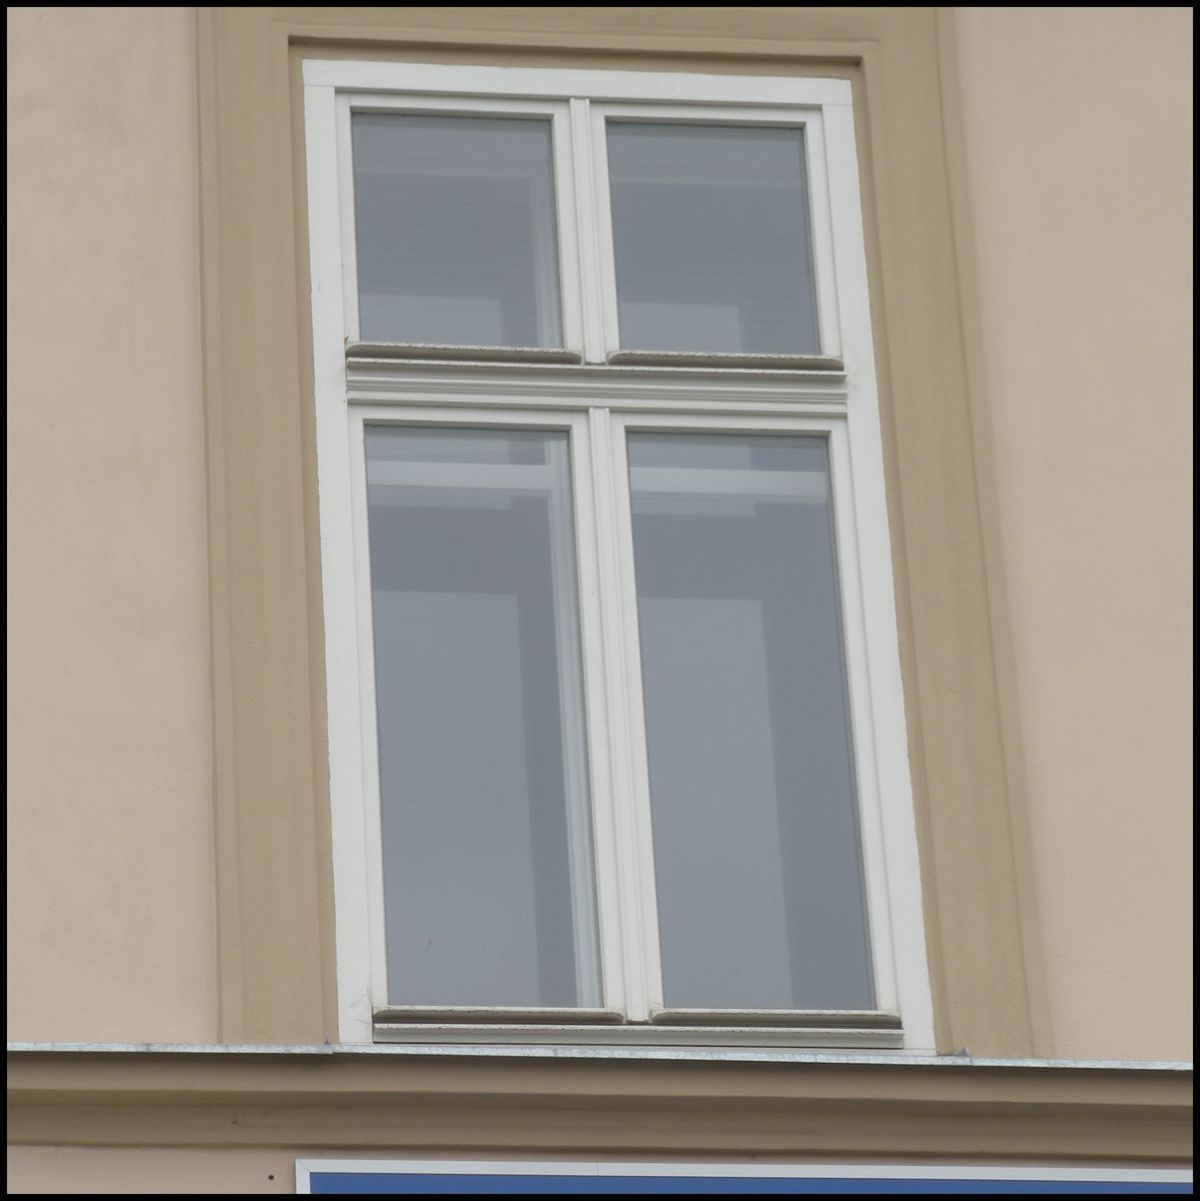 Kastlov okna eln fasdy vzhledem shodn s pvodnmi okny - jsou tvoen eurookny profilu IV-68 a jednoduchmi vnitnmi kdly